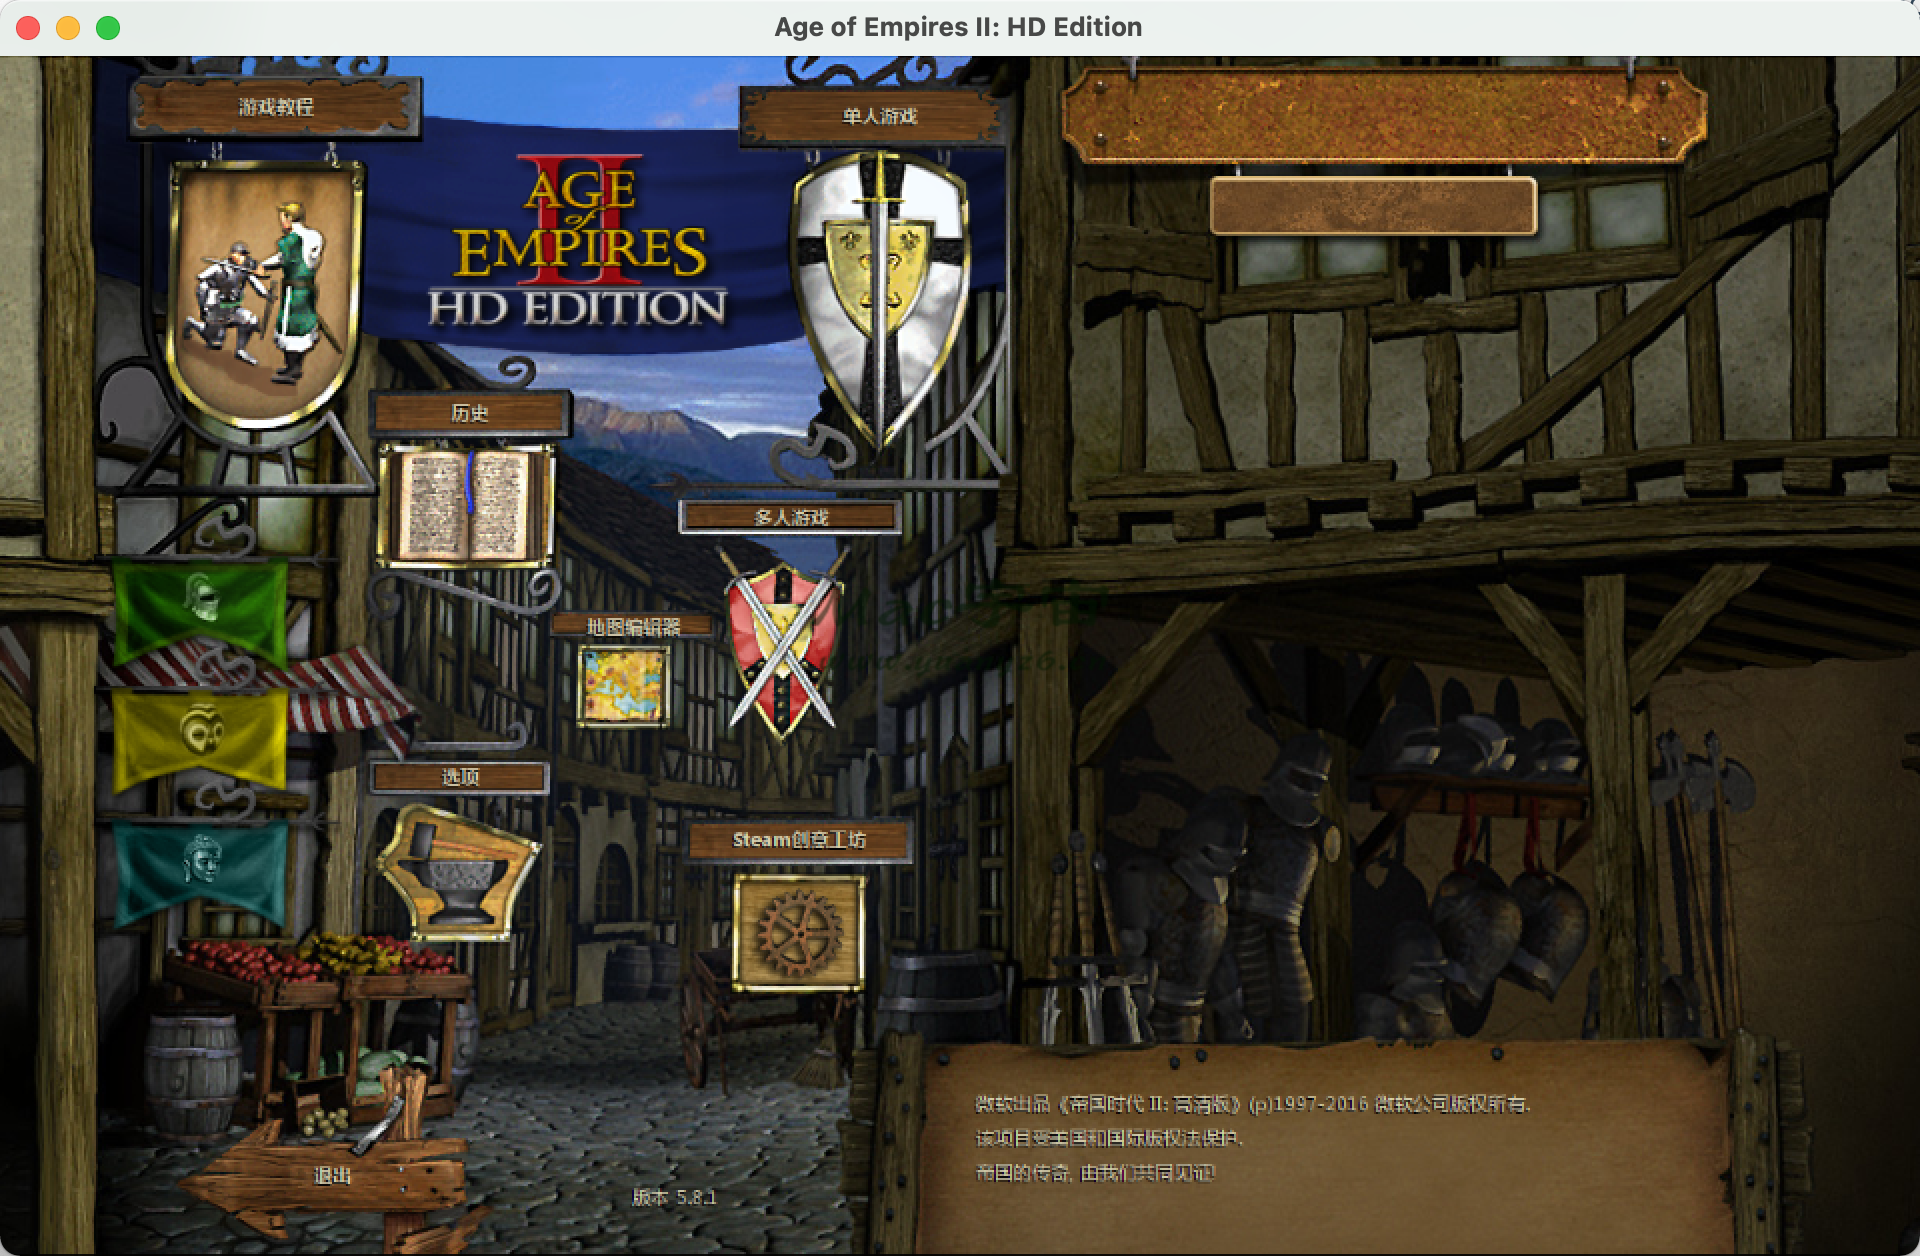 帝国时代2 HD  for Mac  Age of Empires II HD 高清重制版 中文移植版 苹果电脑